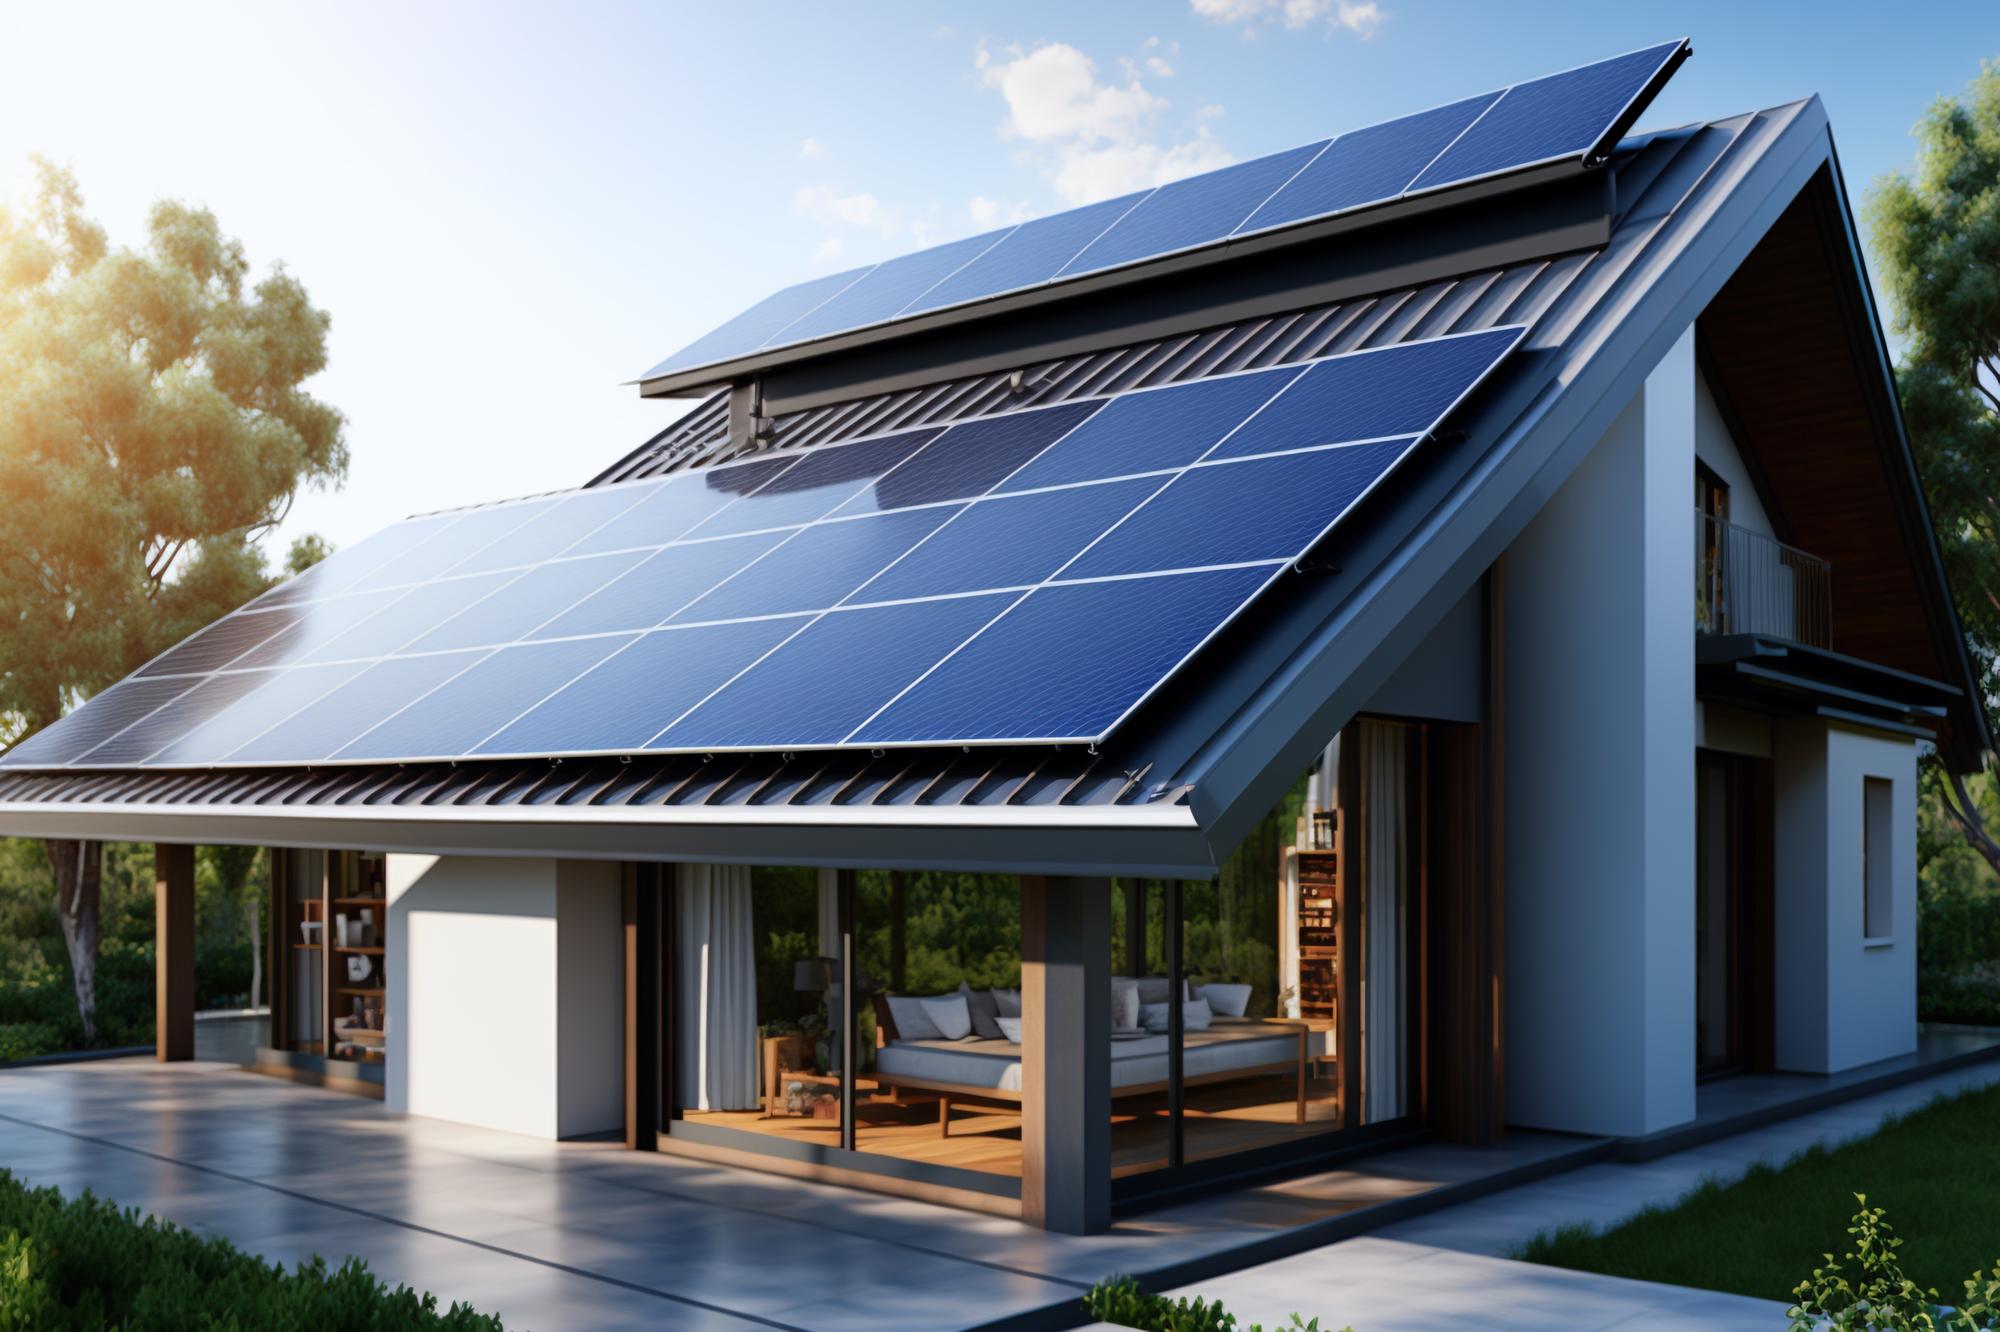 2. Zestawy solarne do domu - klucz do oszczędności